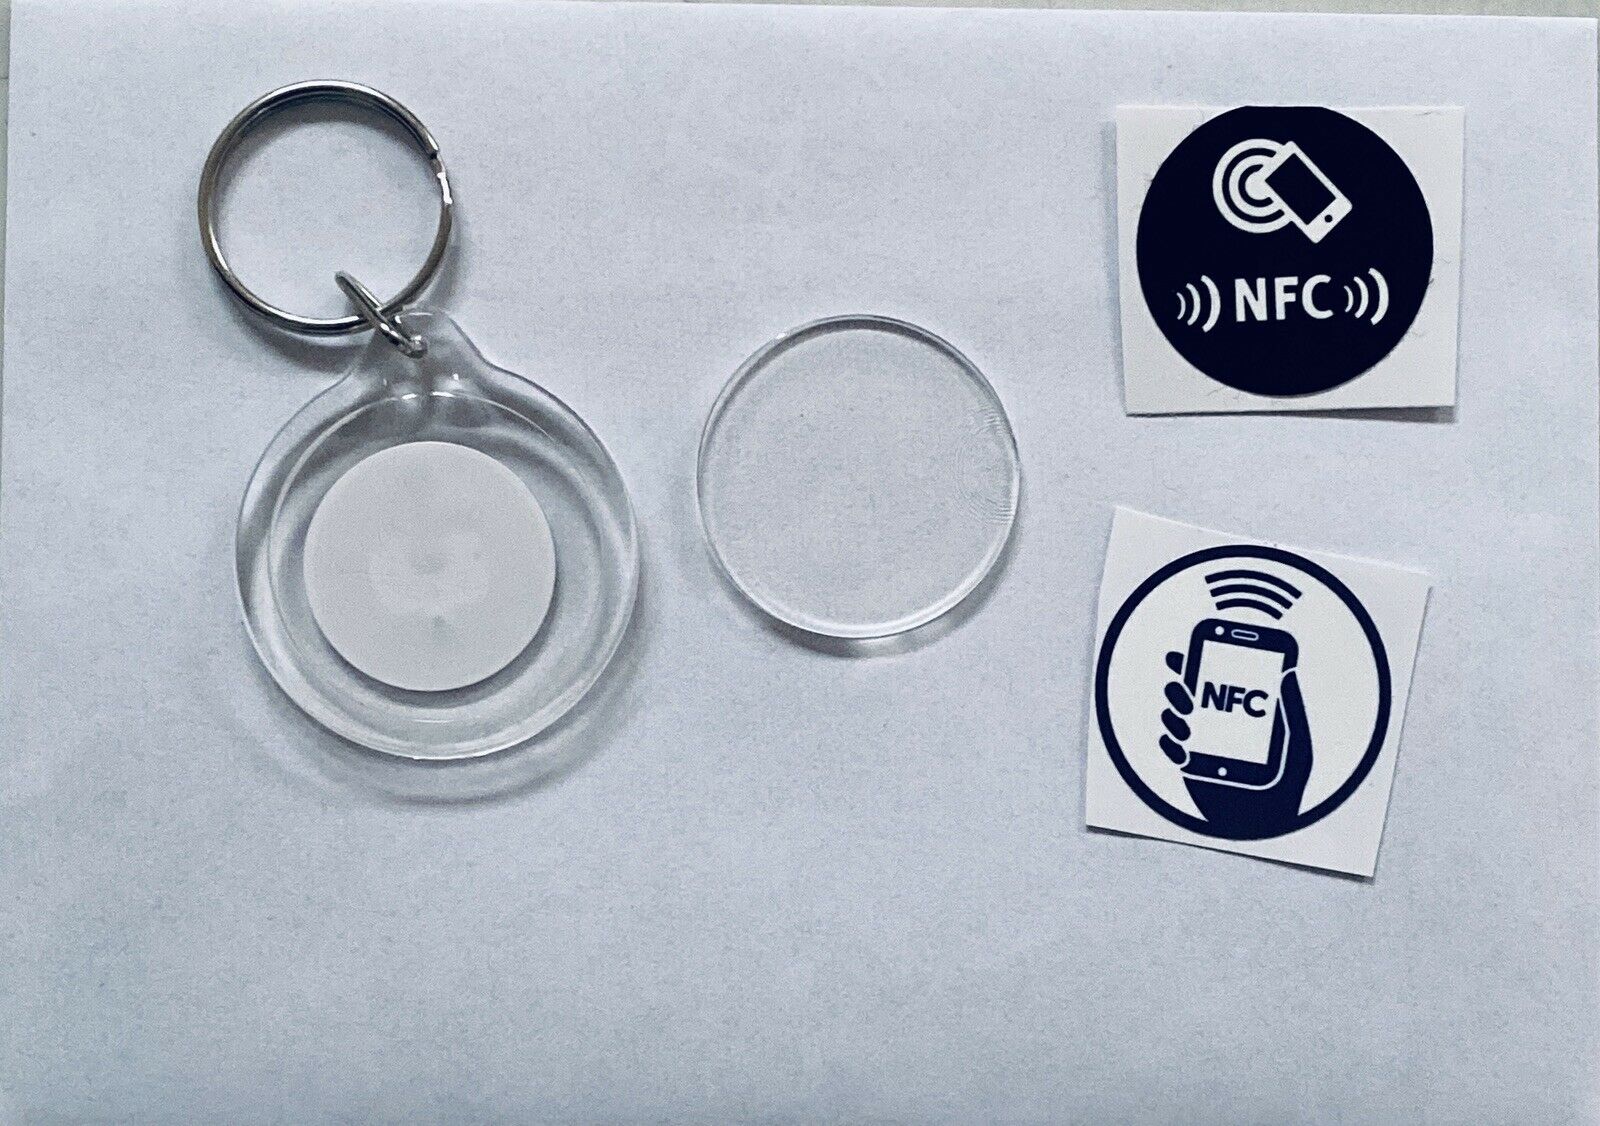 10 Stk. NFC-NTag215, Schlüsselanhänger zur Selbstgestaltung auch für Amiboo geeignet